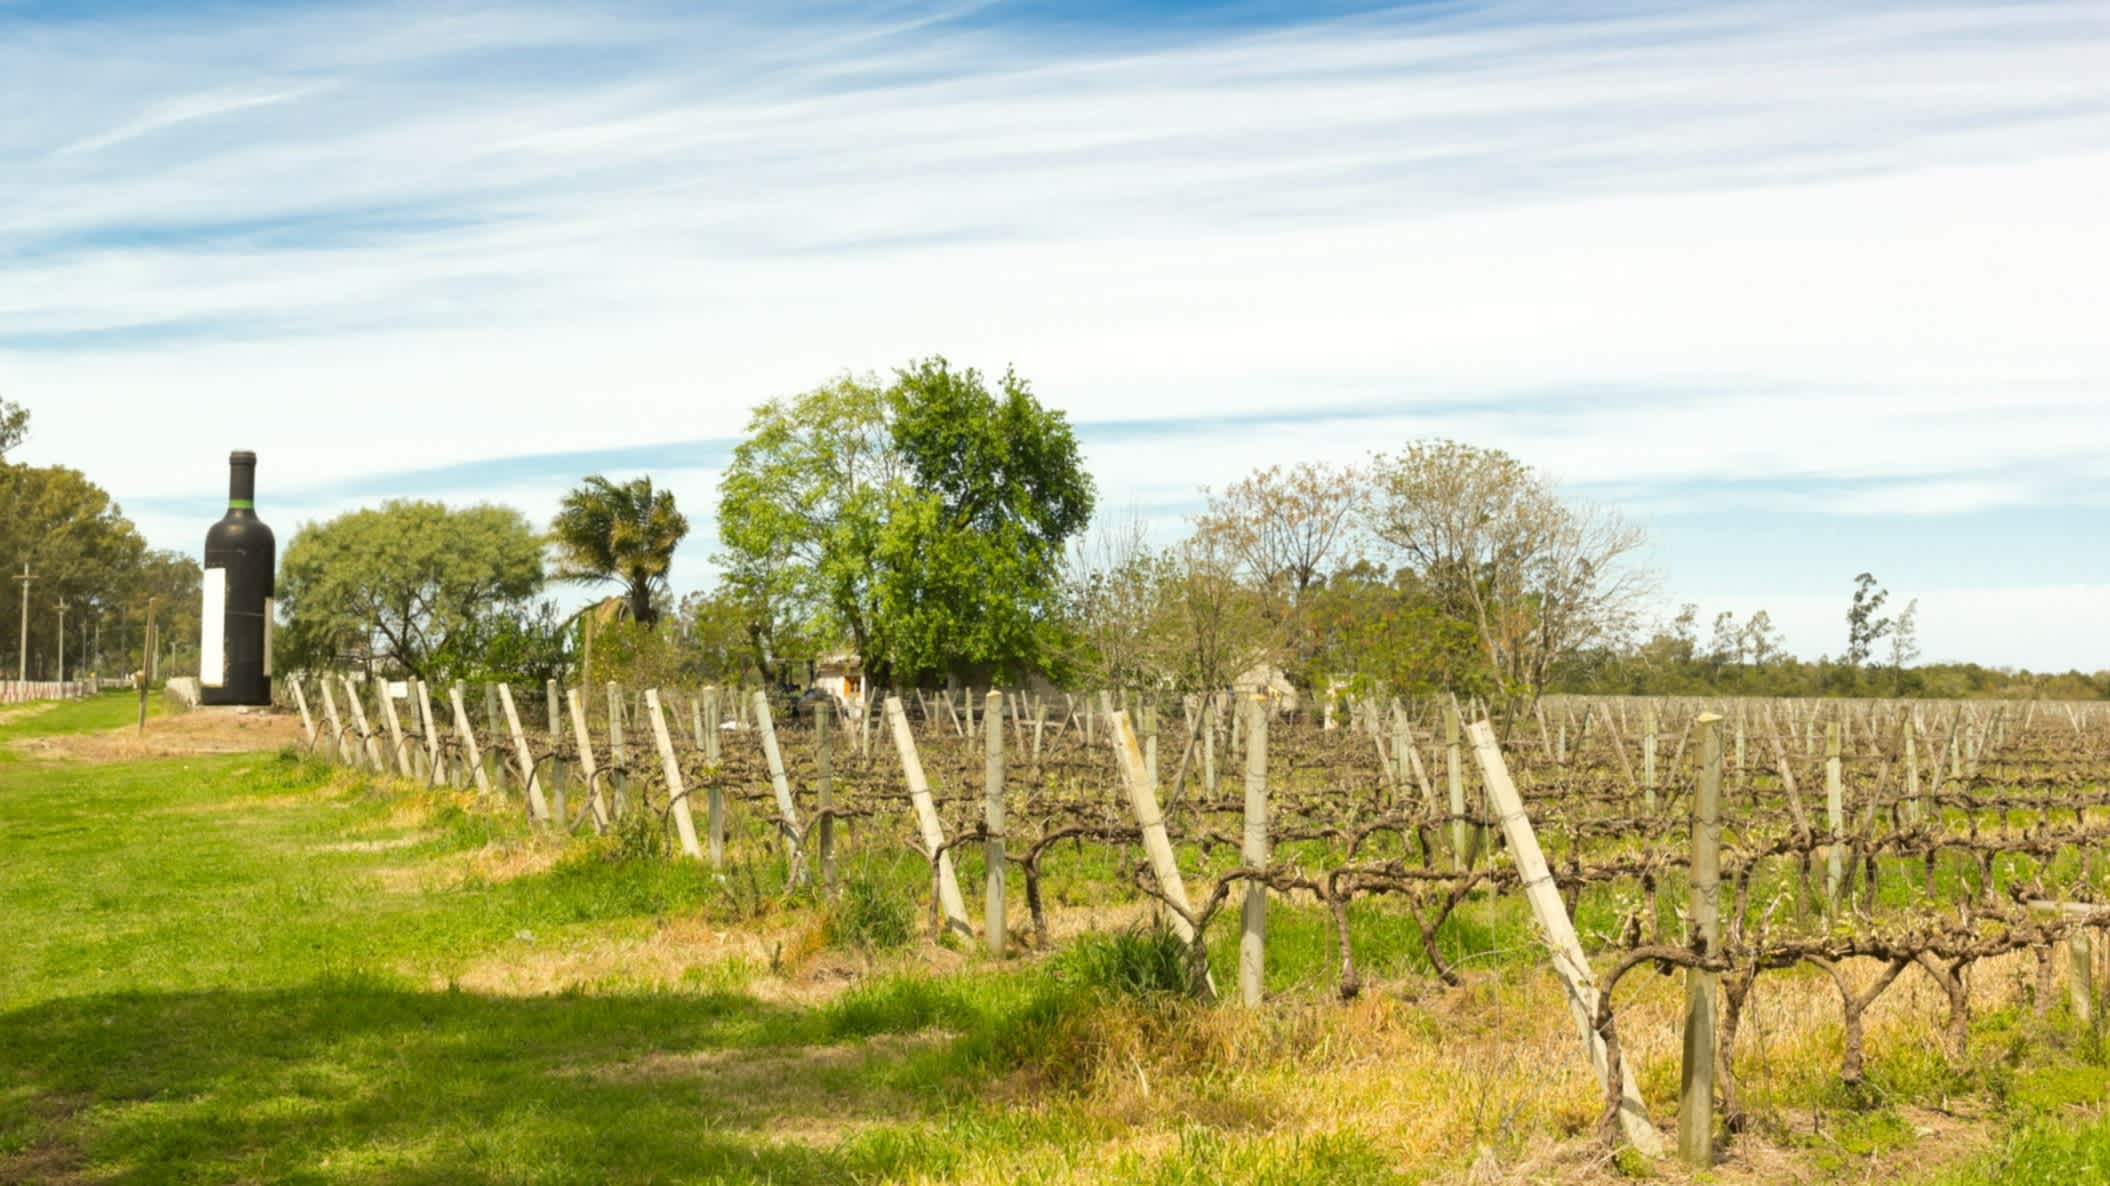 Uruguayischer Weingut in der Nähe des Rio Uruguay

